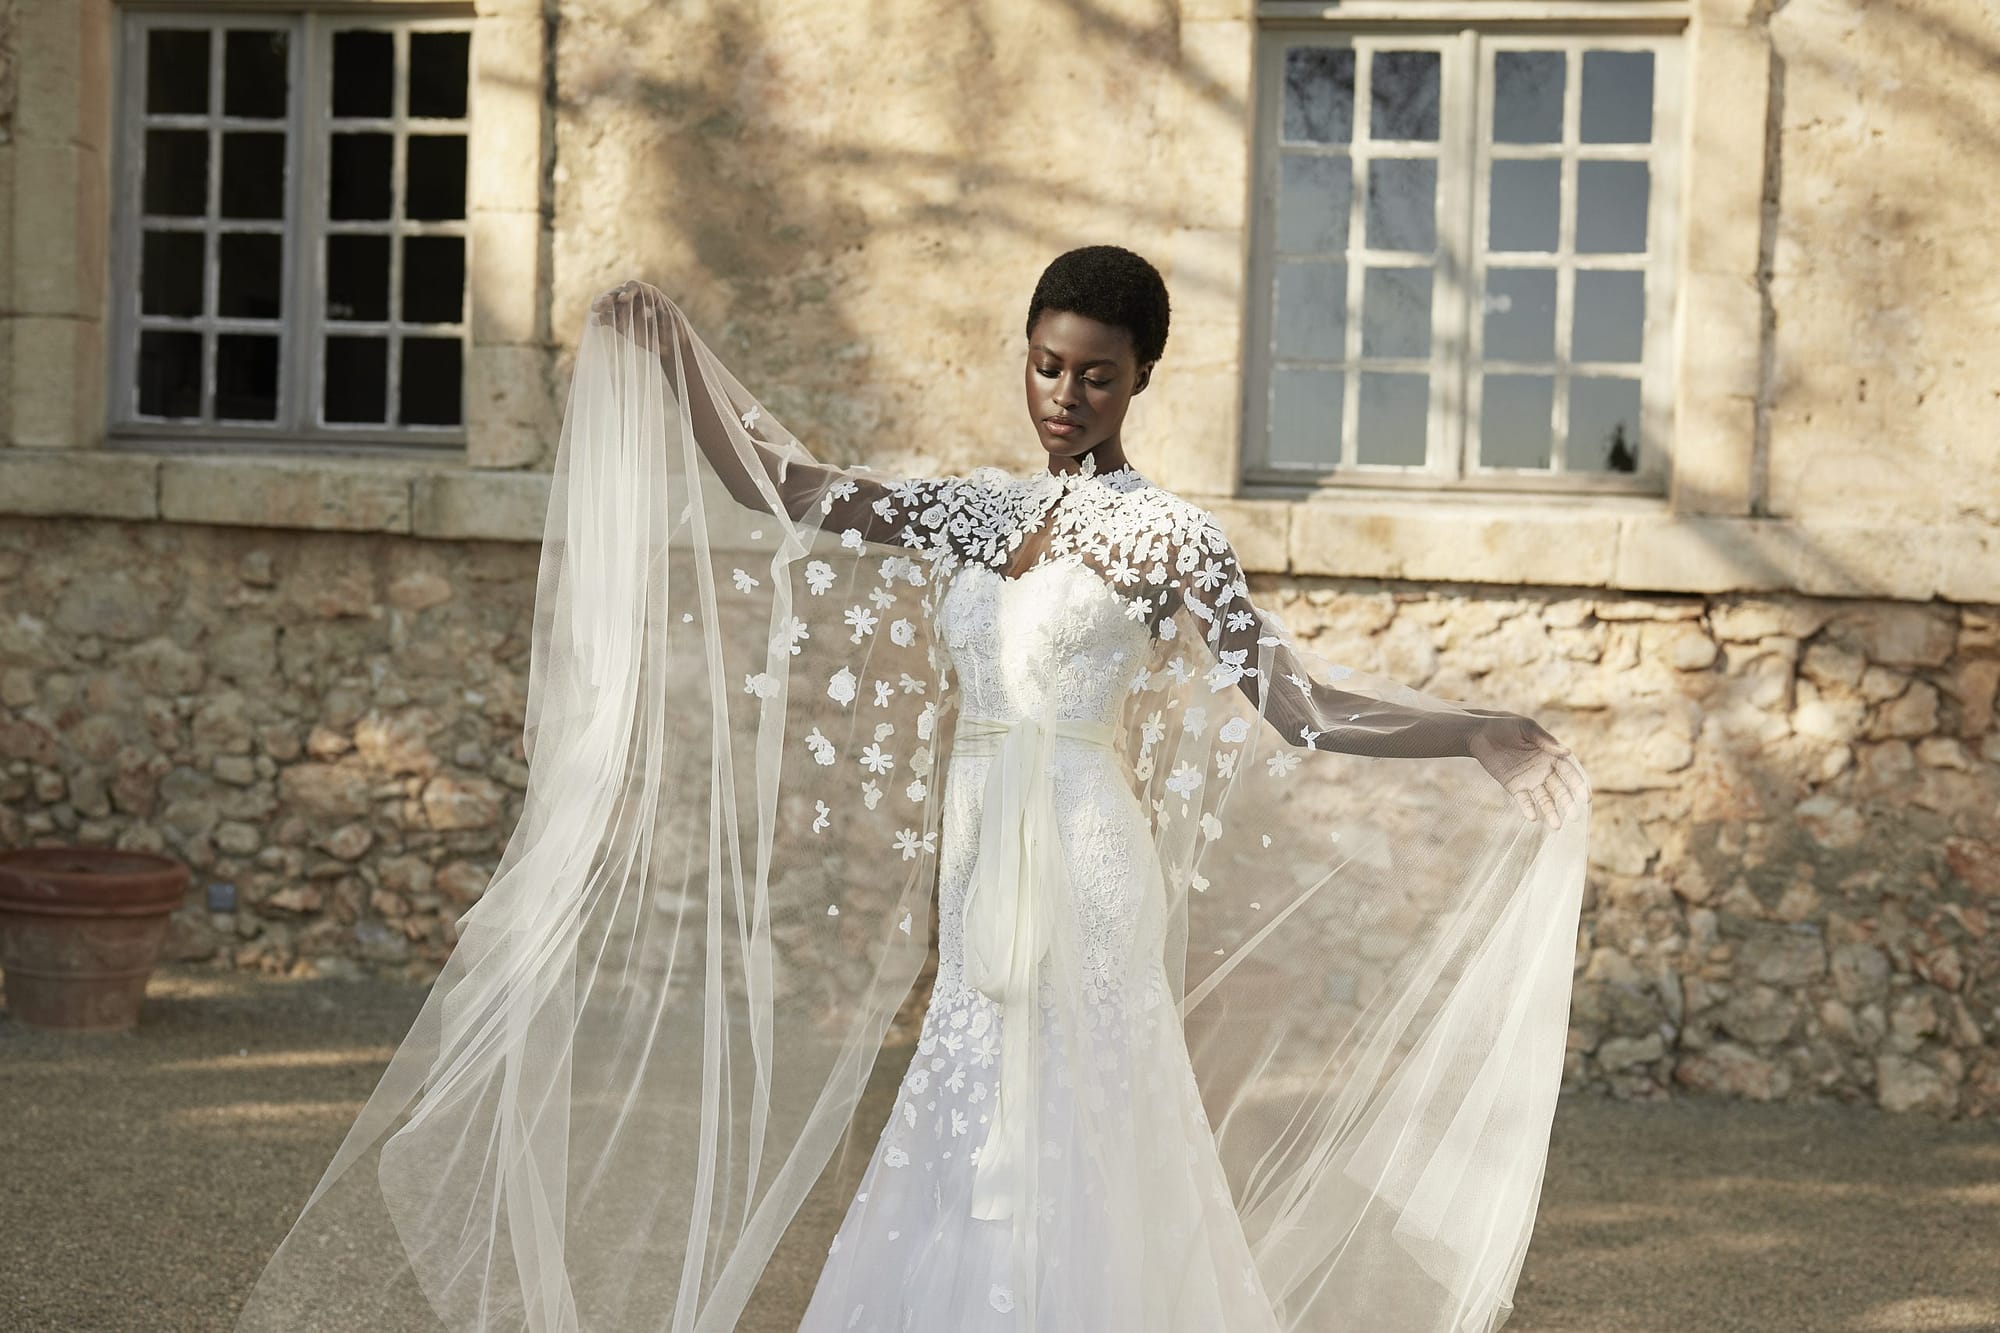 Bridal dress designer Peter Langner in Milan, Italy for a destination wedding